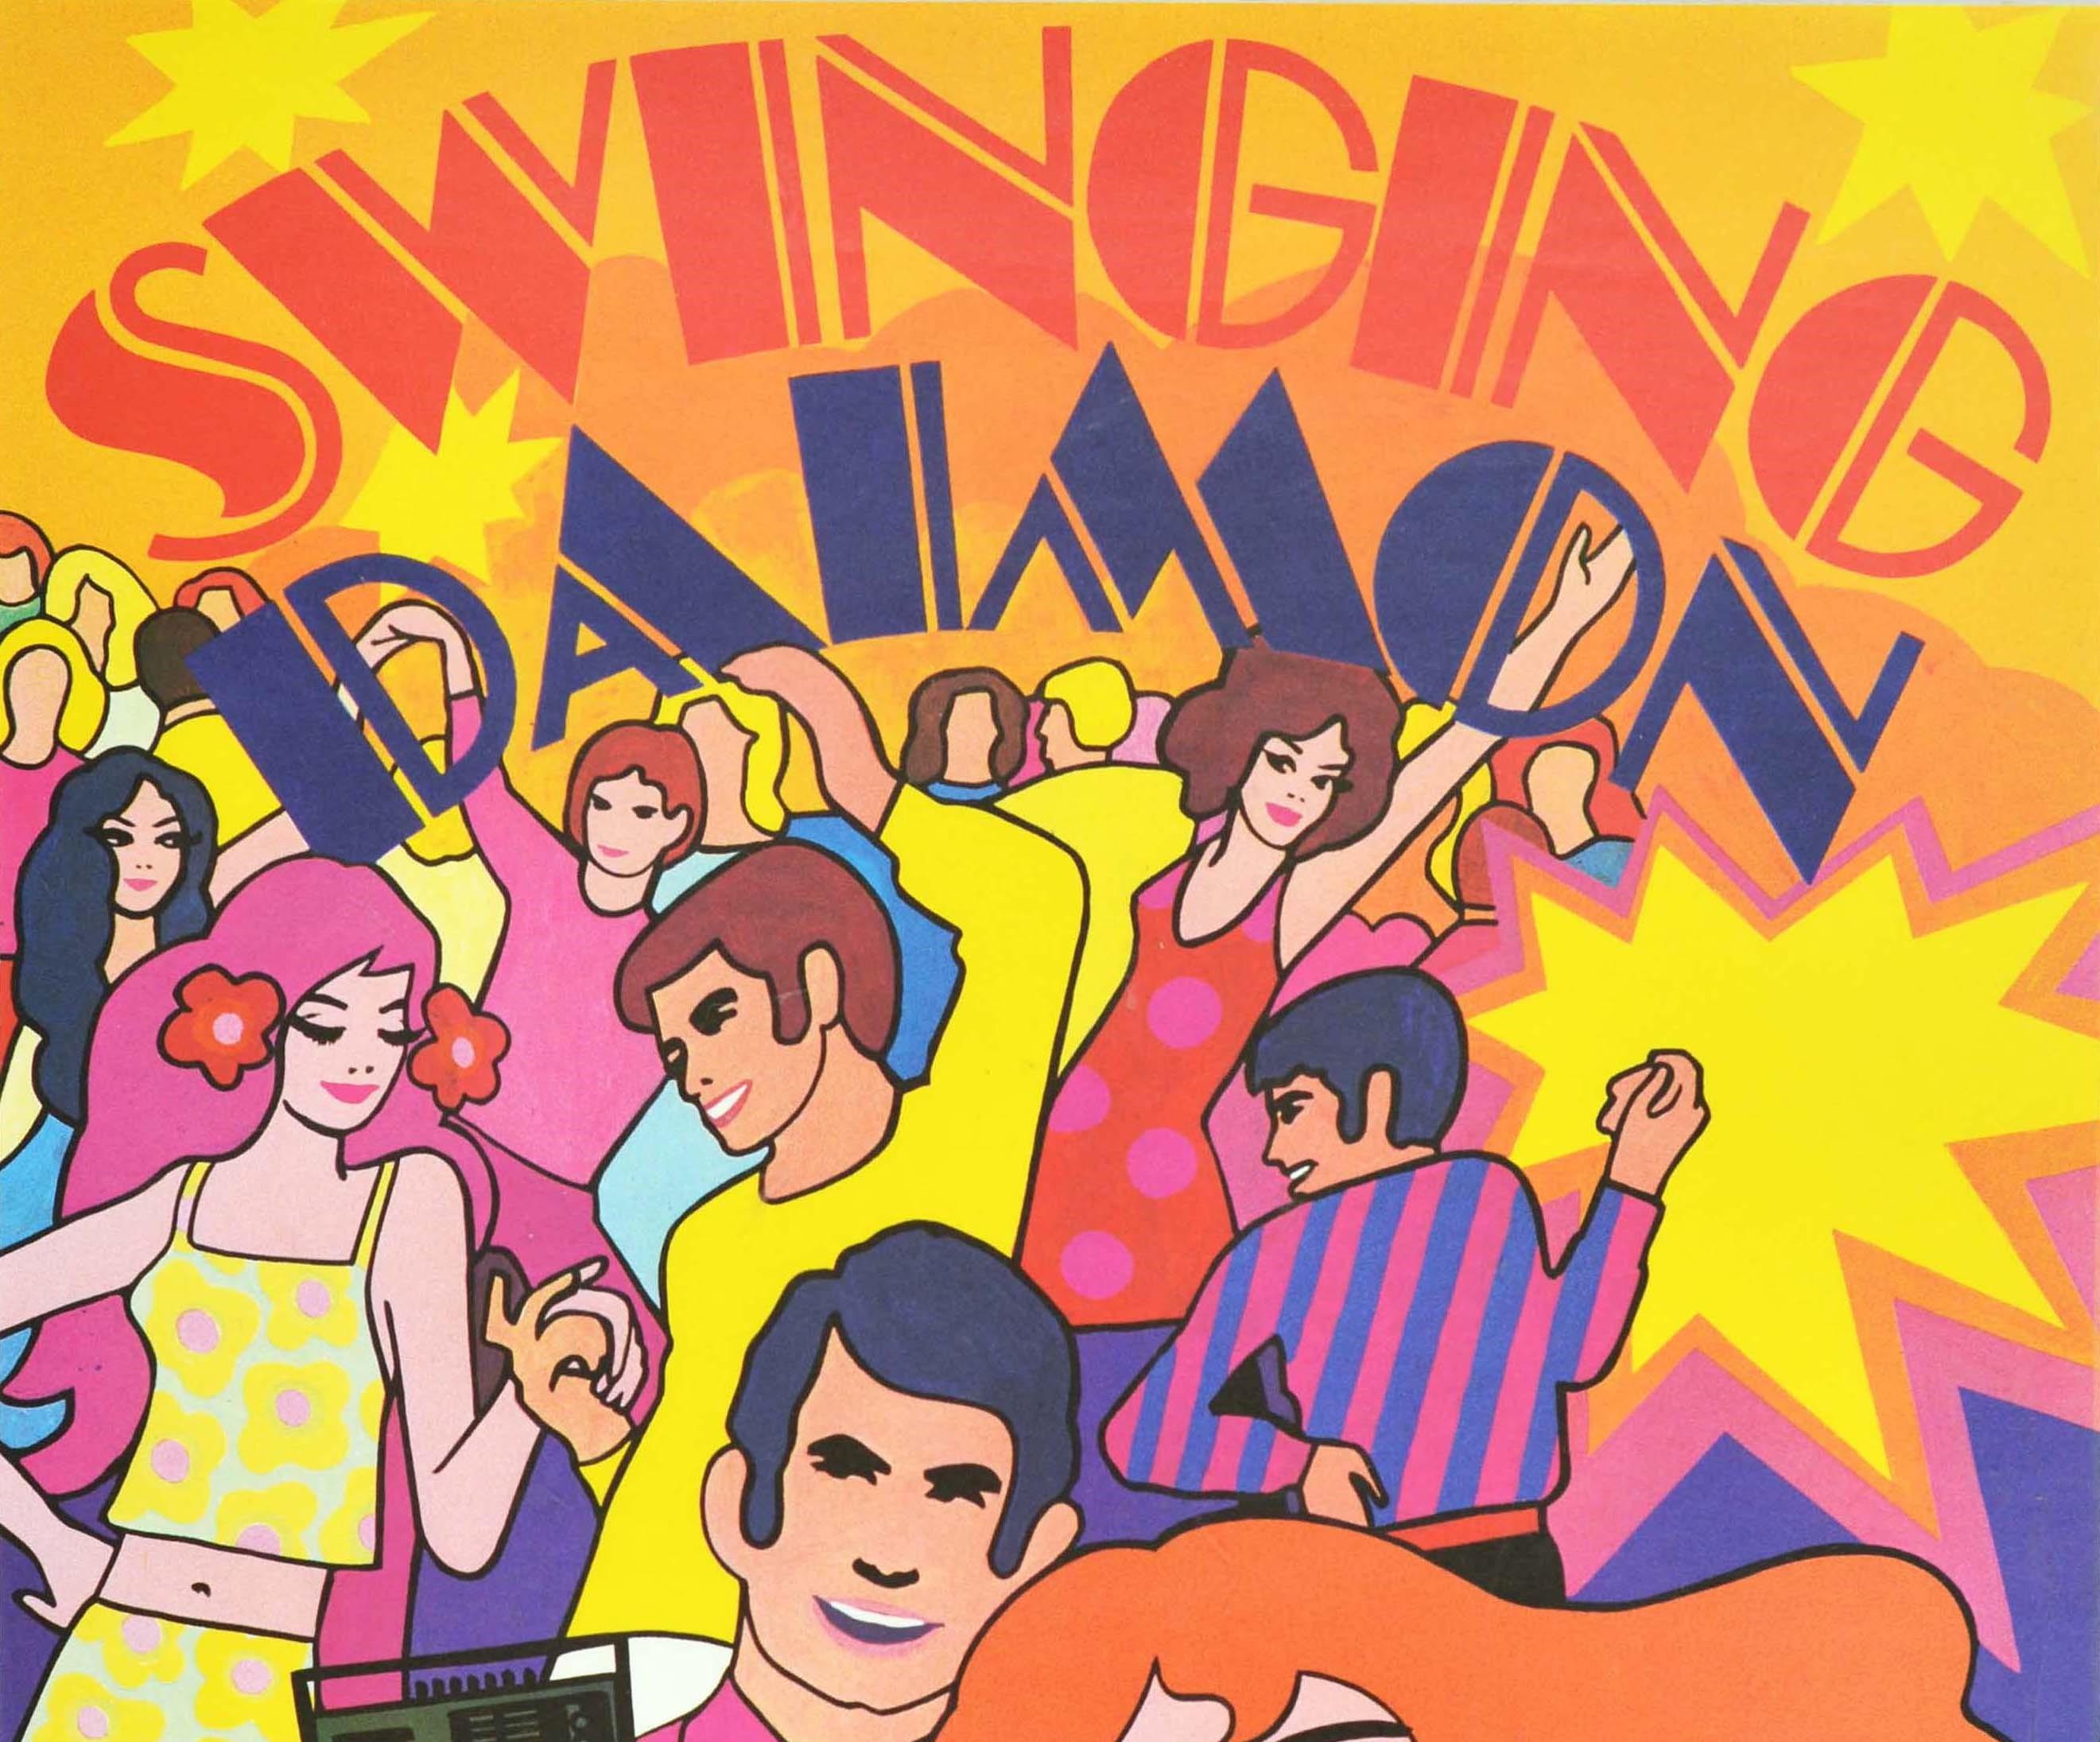 Original Vintage-Werbeplakat für Daimon Radio - Swinging Diamon - mit einem farbenfrohen psychedelischen Design im Stil der 60er Jahre, das fröhliche Menschen in modischen Outfits zeigt, mit einer lächelnden jungen Dame und einem lächelnden Mann,